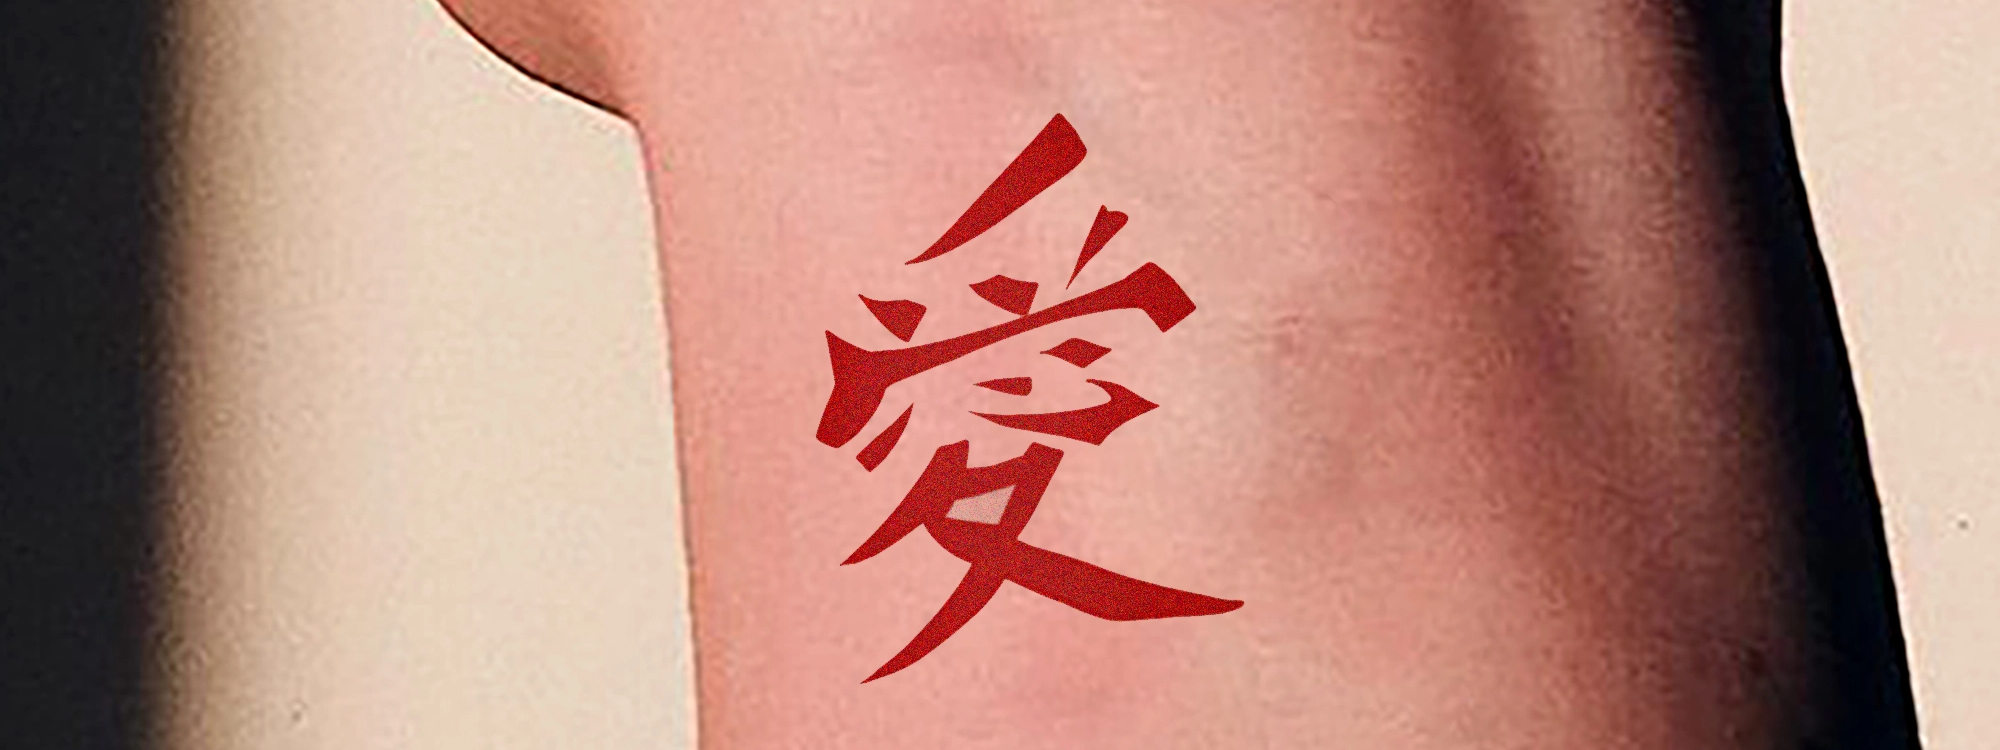 Se liga nessa tattoo do kanji do Gaara, amei fazer até por que sou